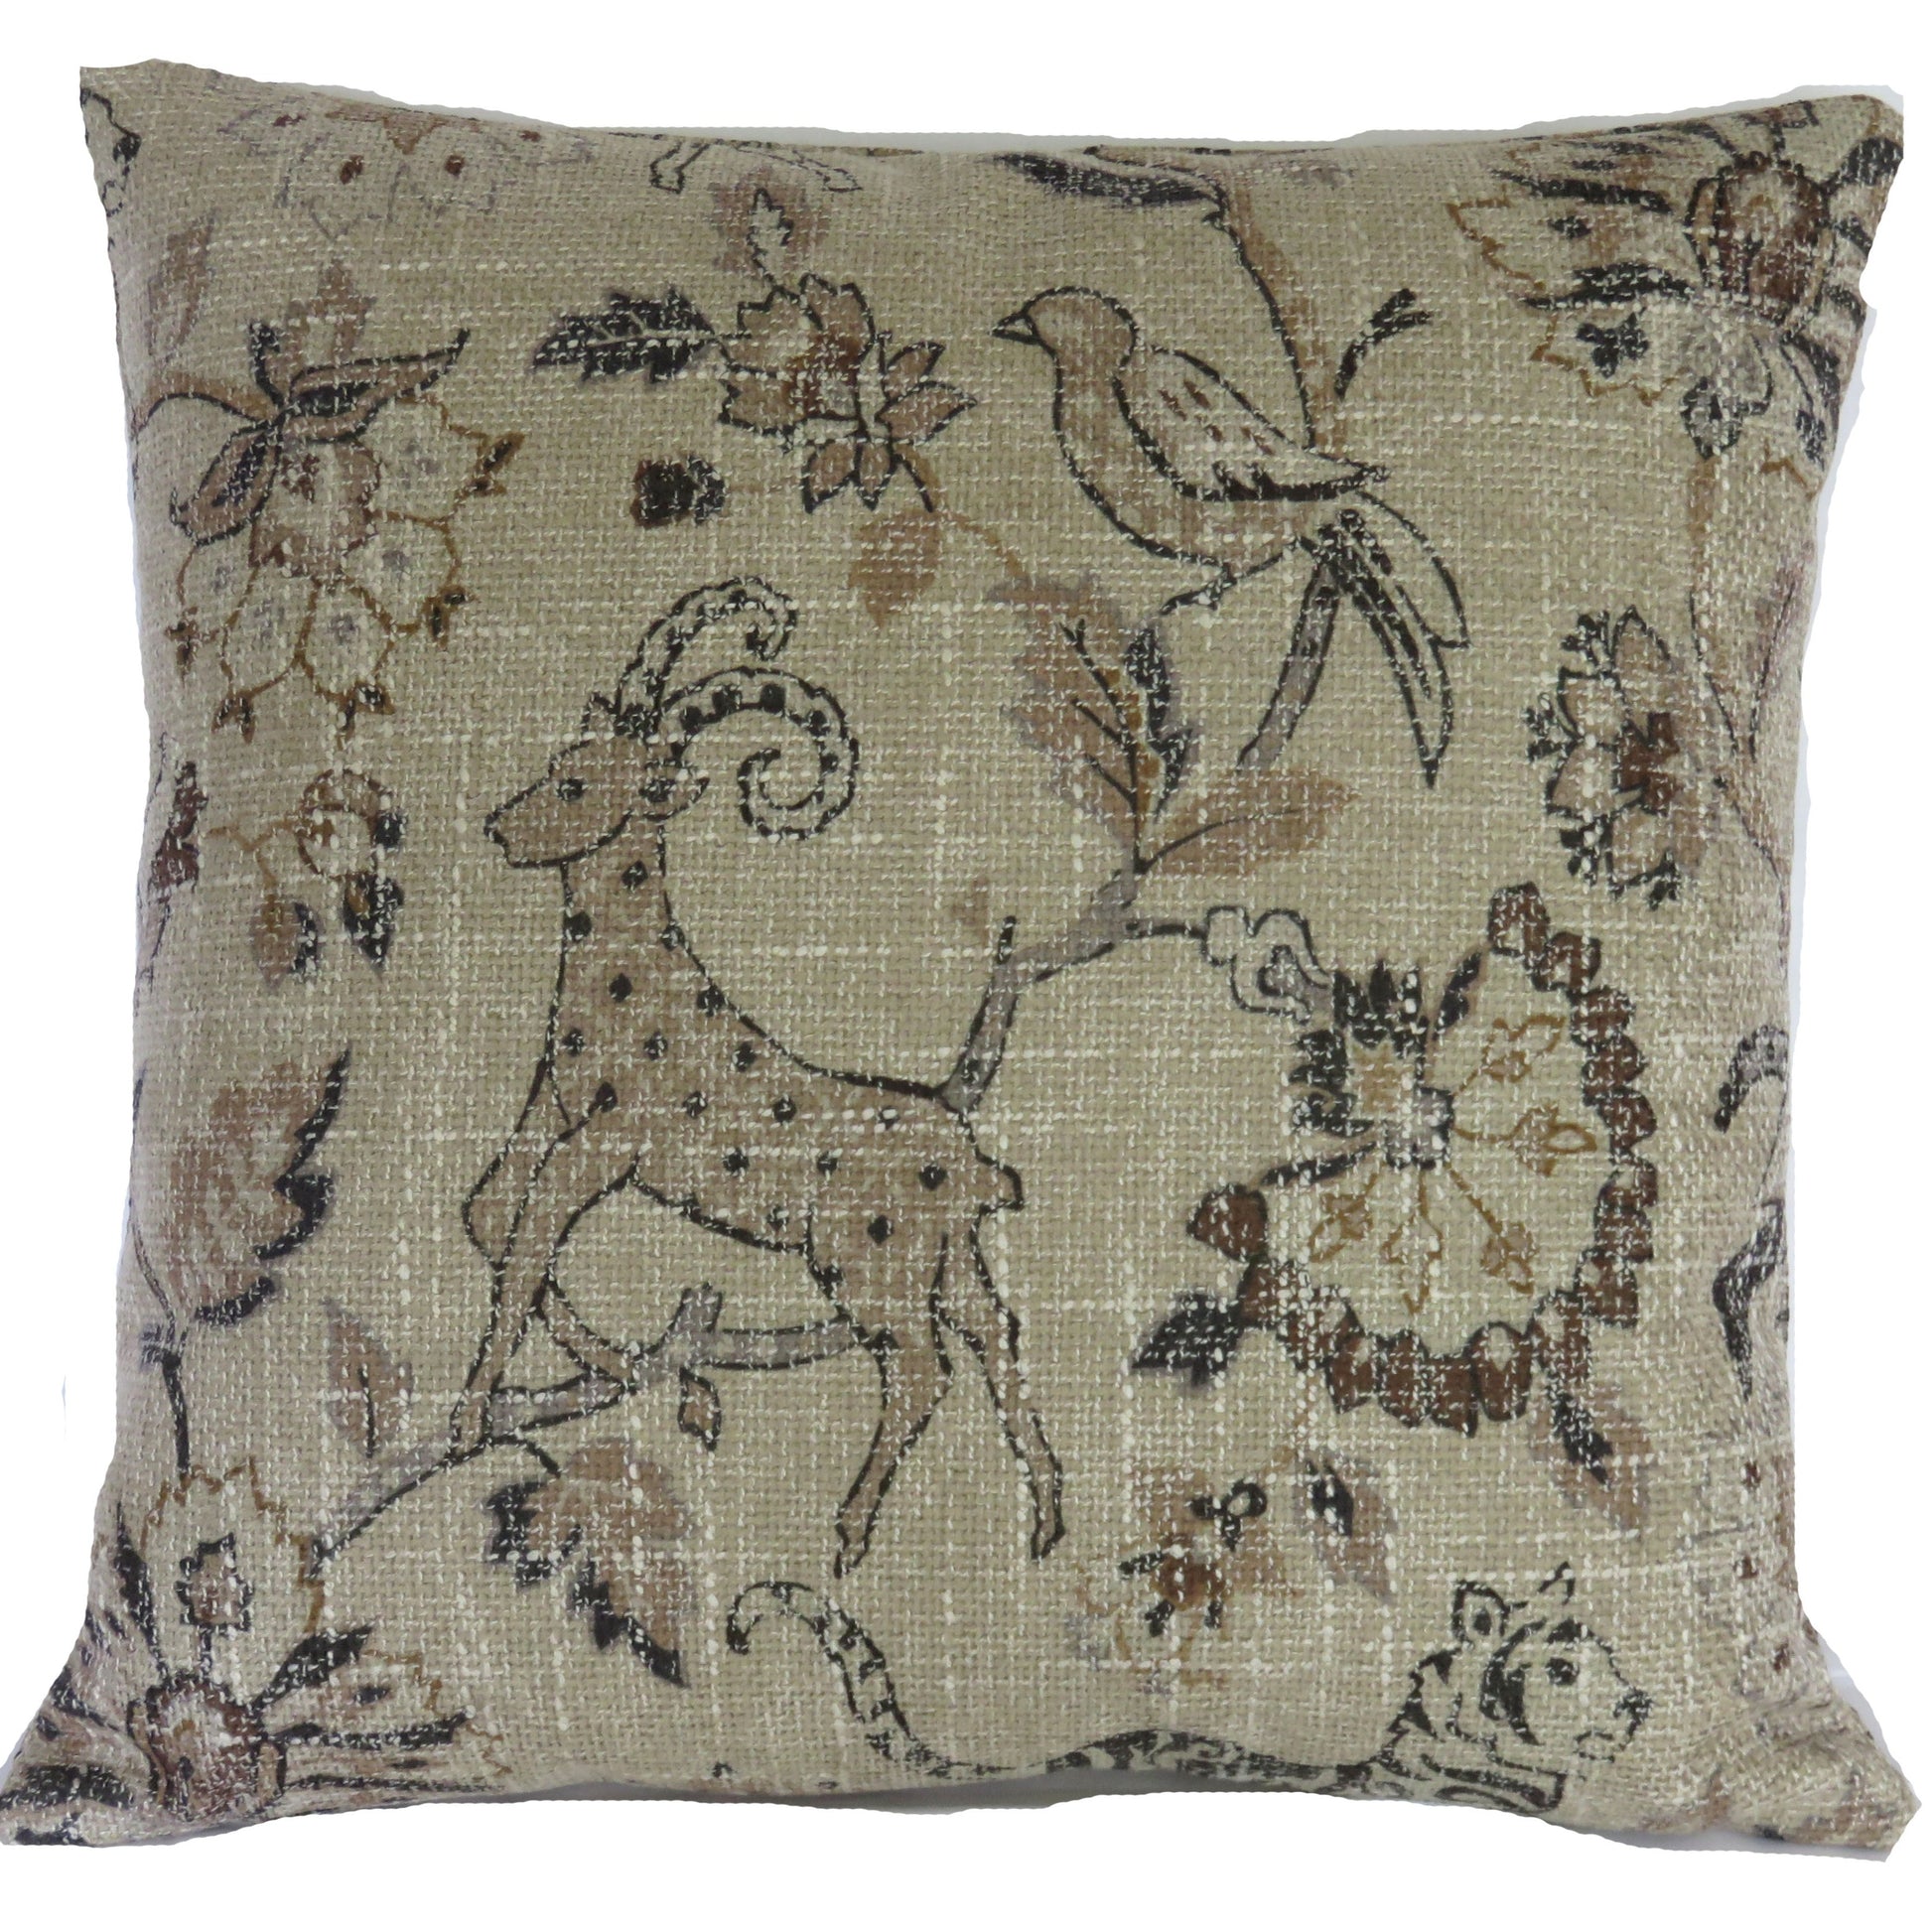 tan safari animal pillow cover with tigers, antelope, birds